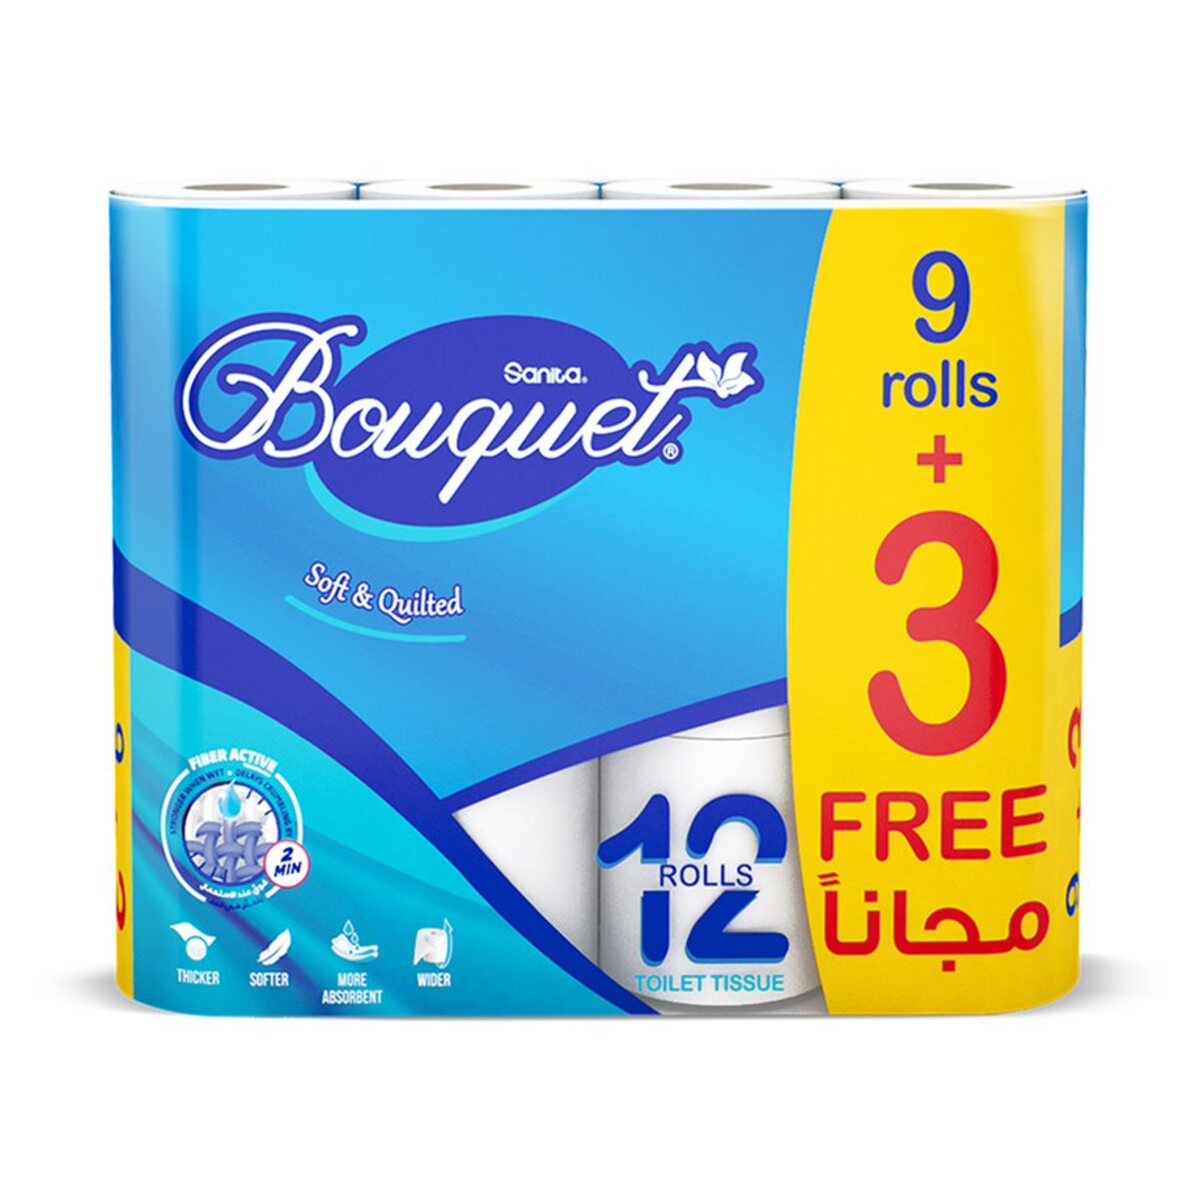 Sanita Bouquet Toilet Tissue 12 Rolls